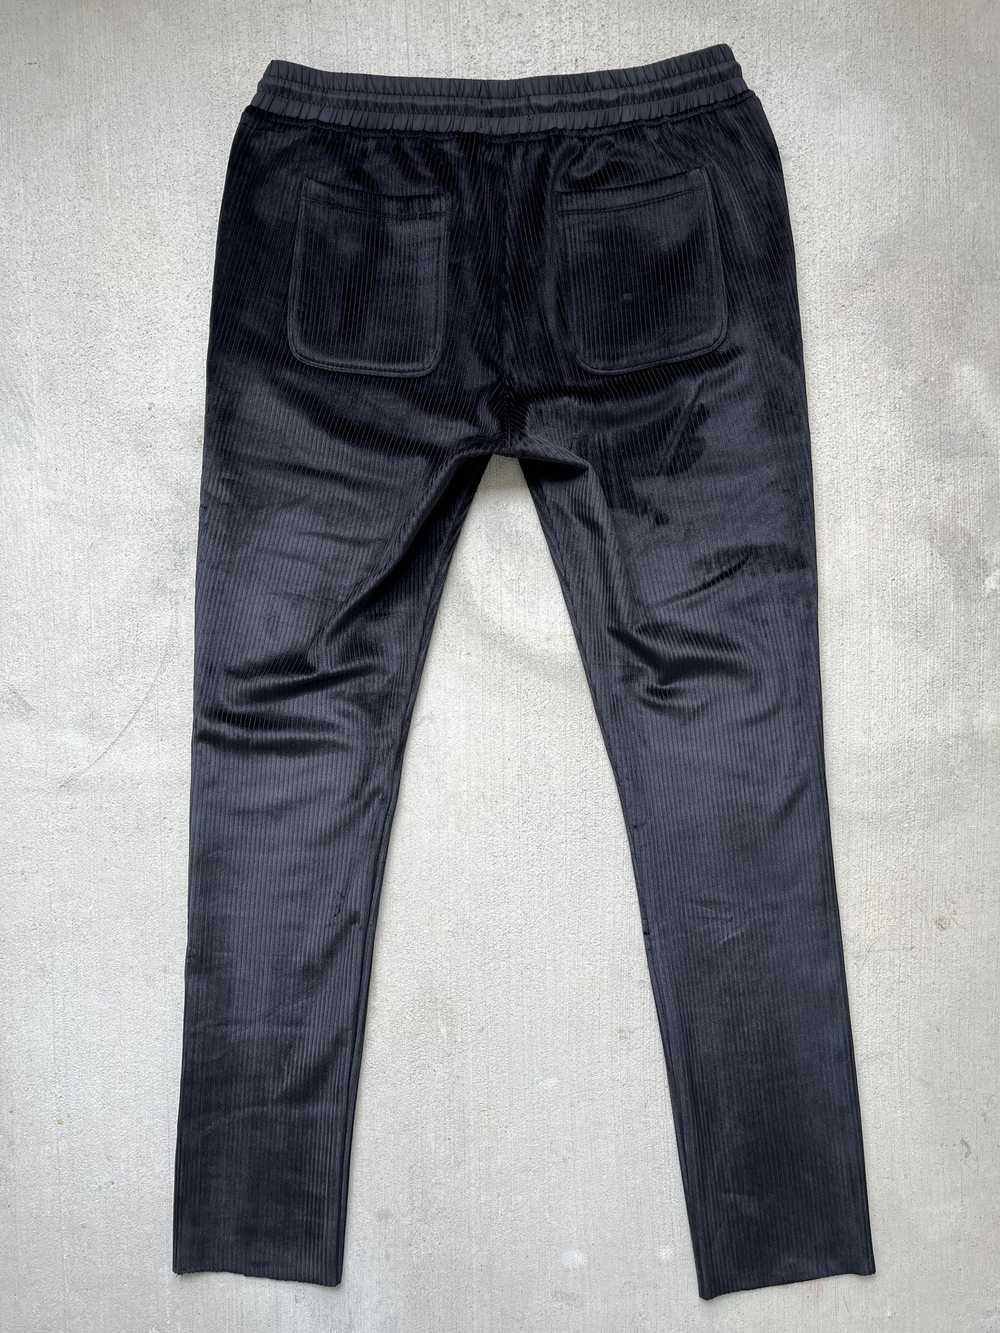 Rta RTA Velour Corduroy Pants Black Size XL - image 5